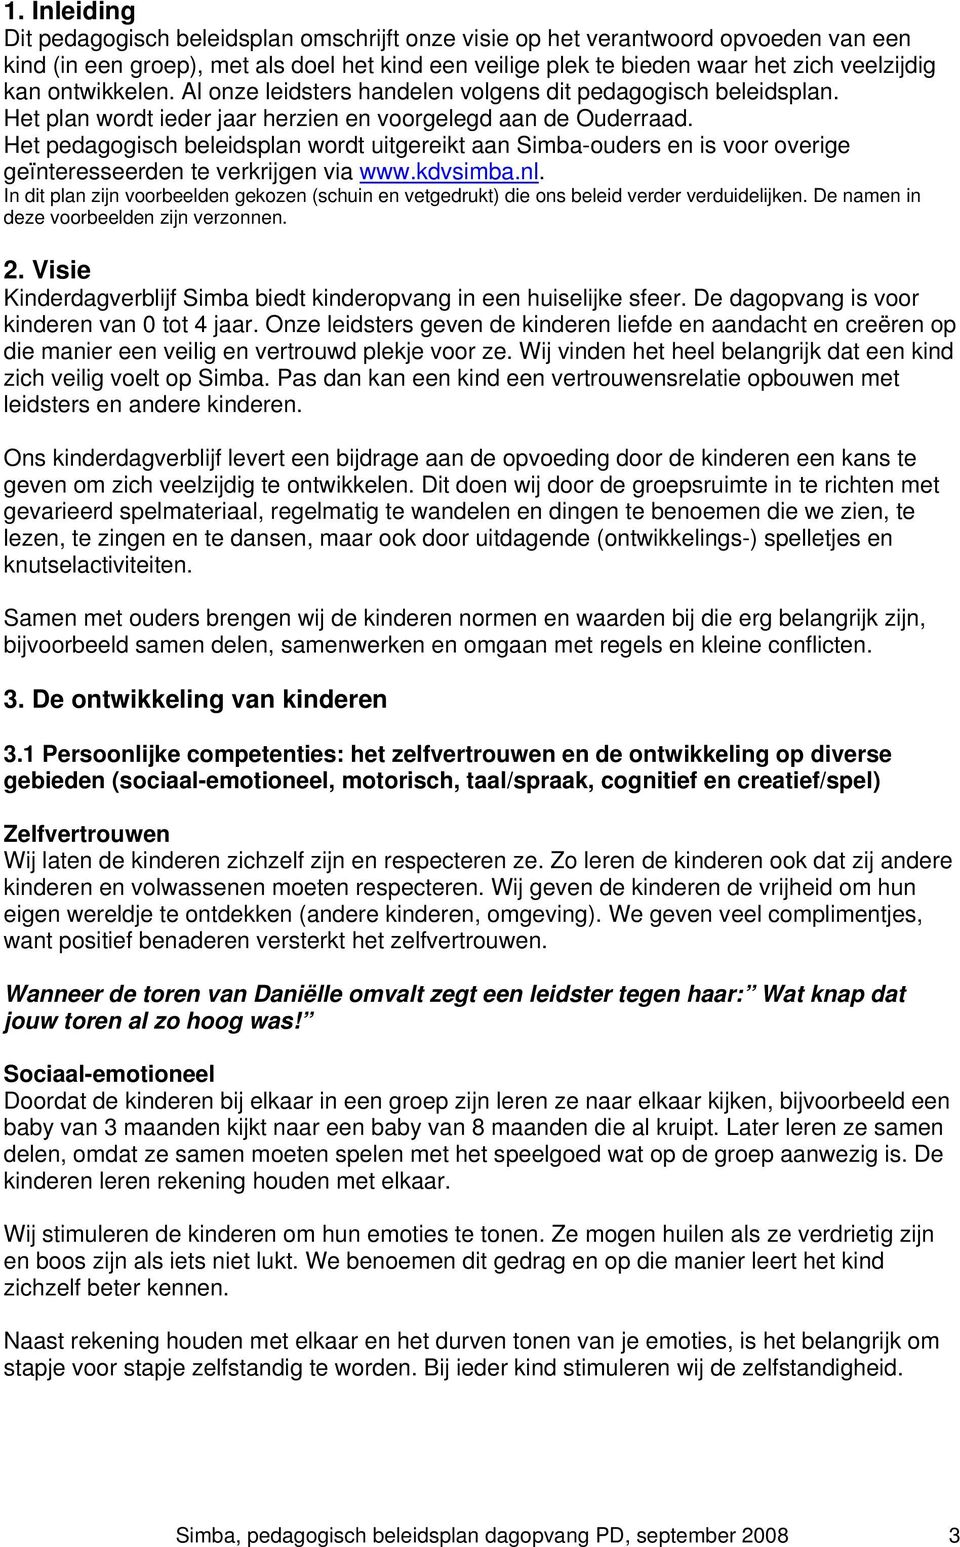 Het pedagogisch beleidsplan wordt uitgereikt aan Simba-ouders en is voor overige geïnteresseerden te verkrijgen via www.kdvsimba.nl.